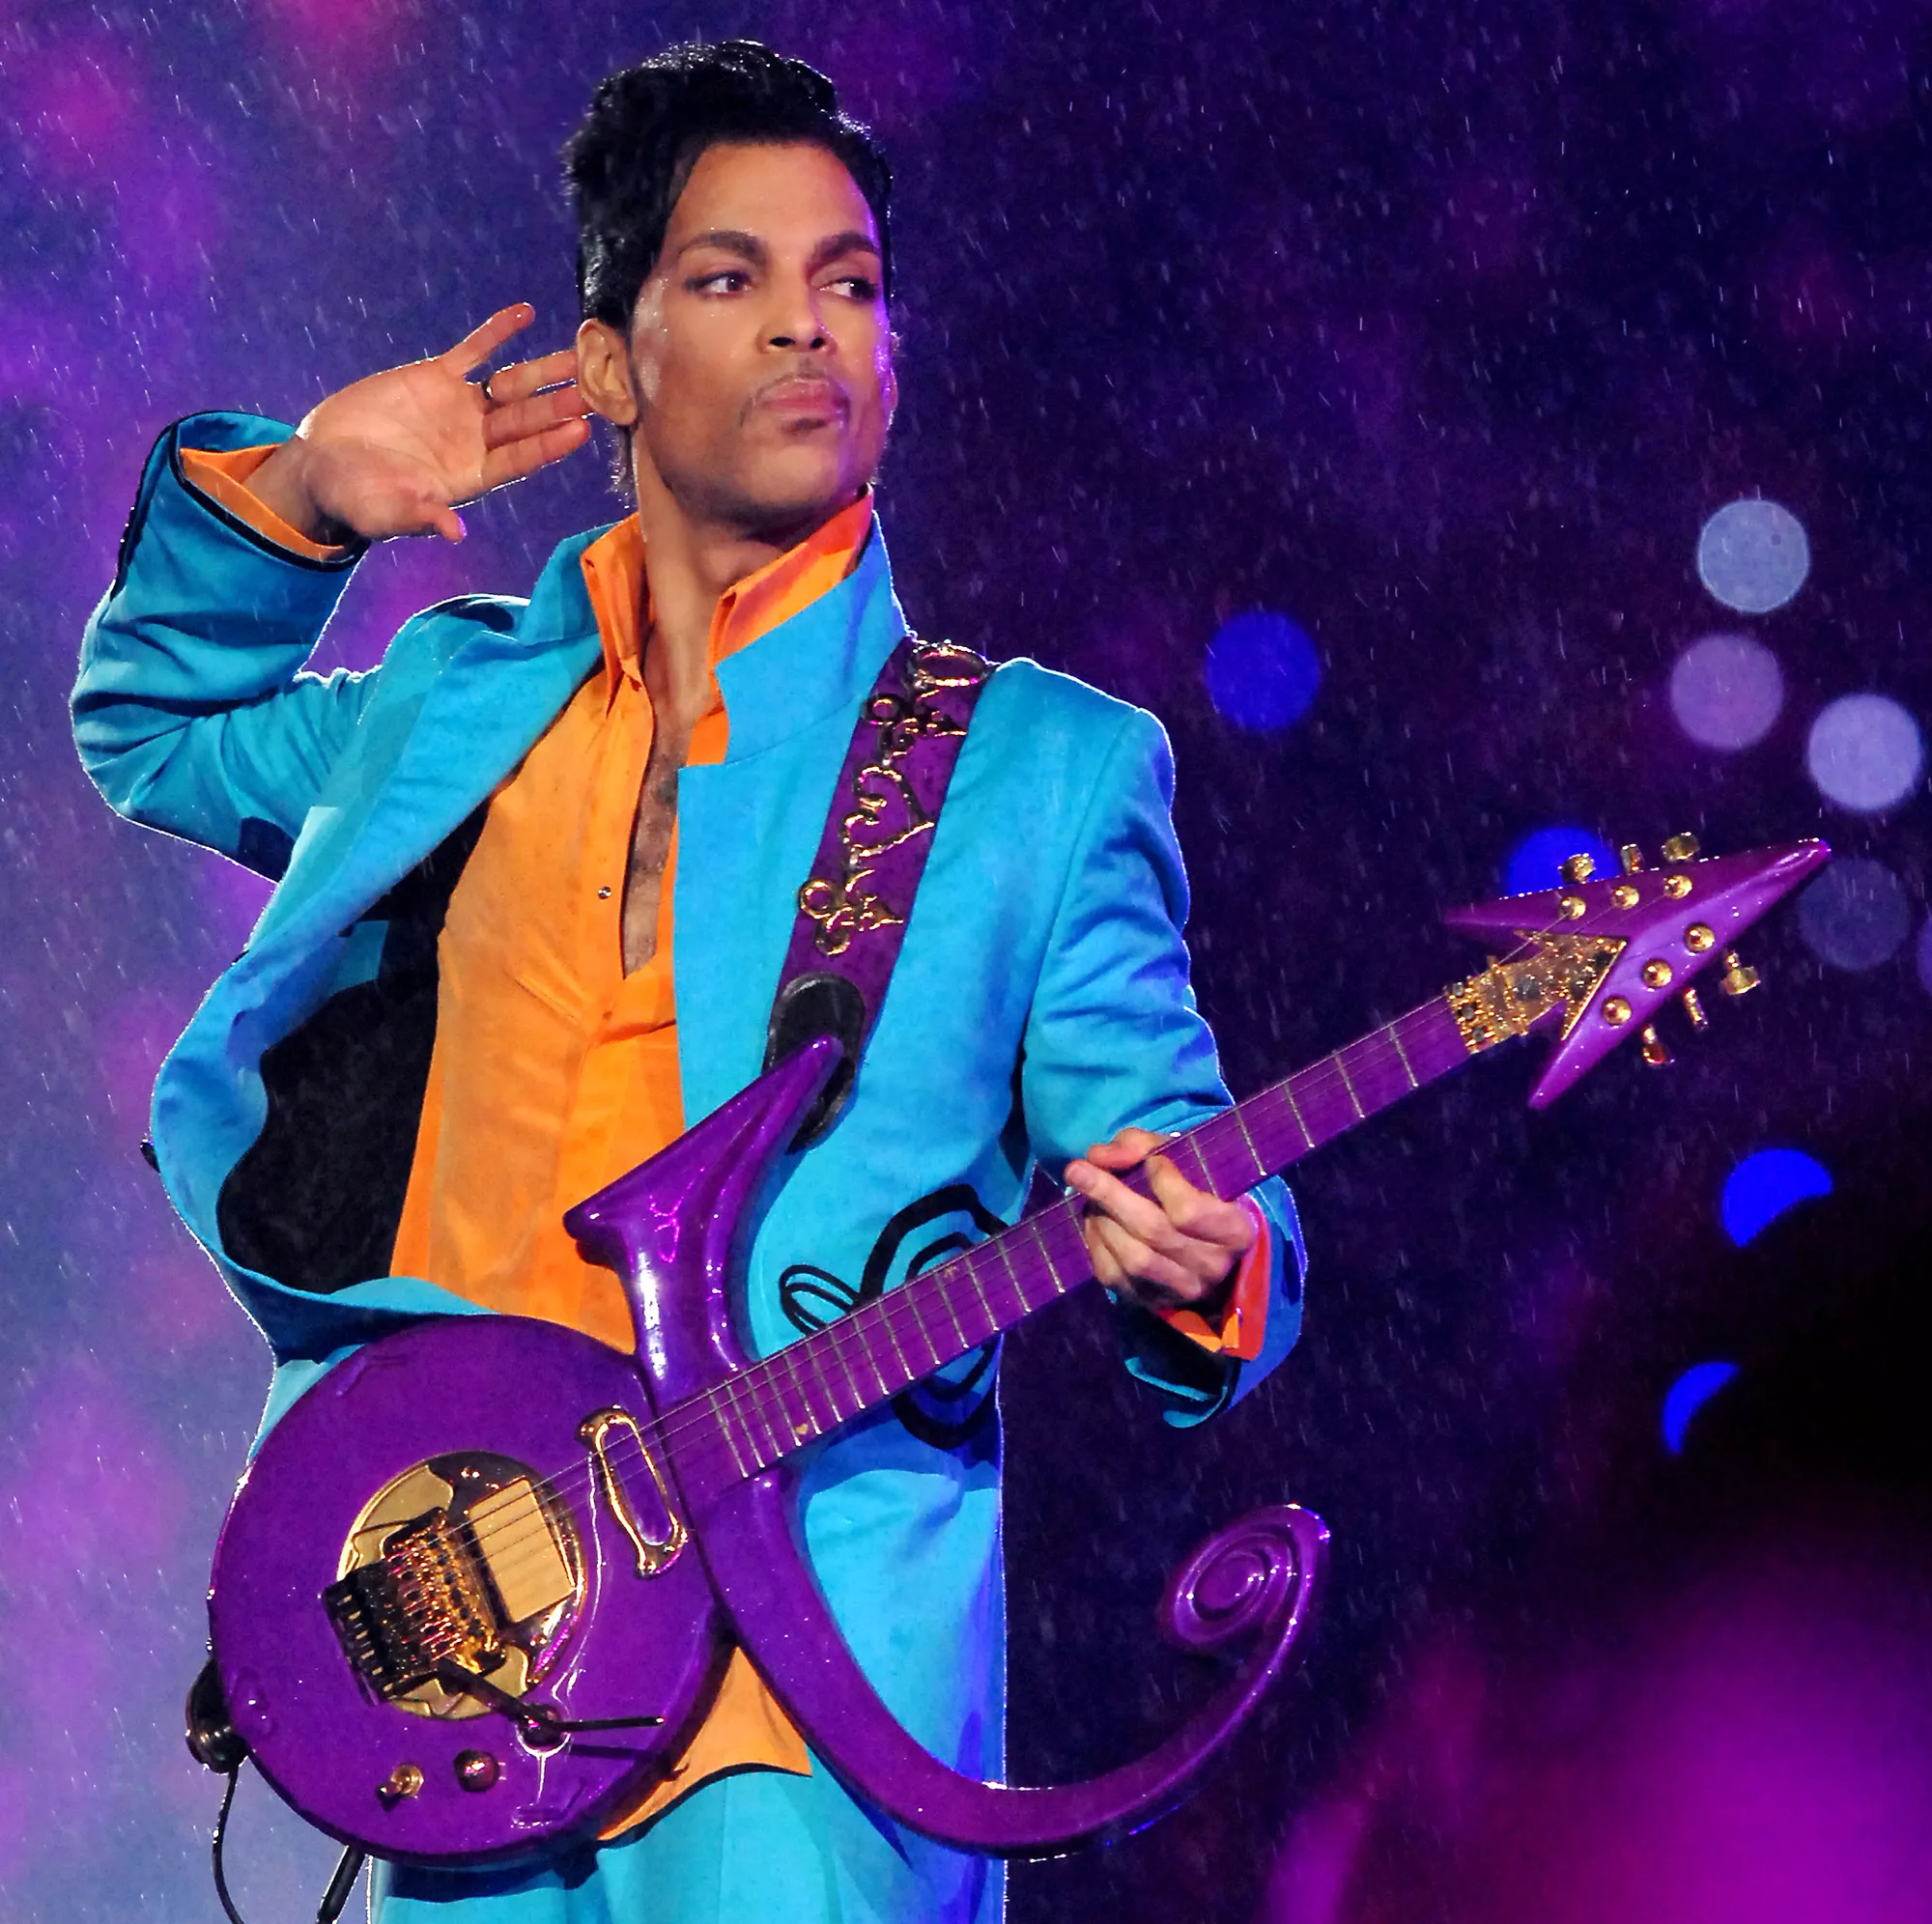 Nu kan du blive medejer af en Prince-sang